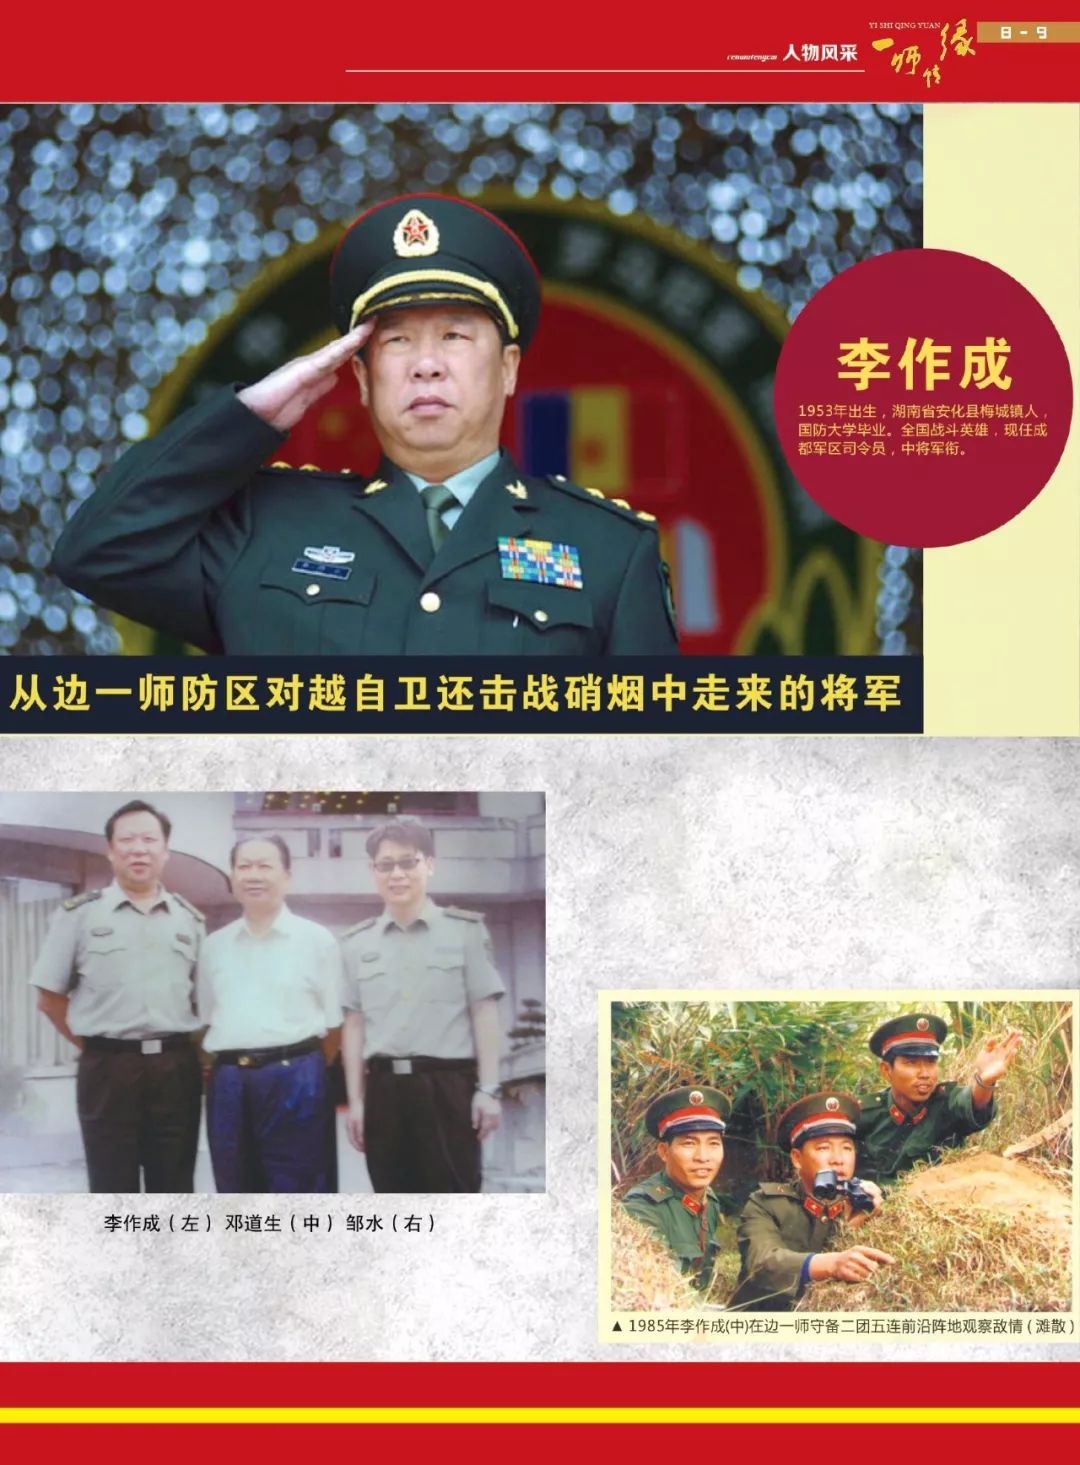 中央军委委员,中央军委联合参谋部参谋长李作成上将亲手打造出的尖刀